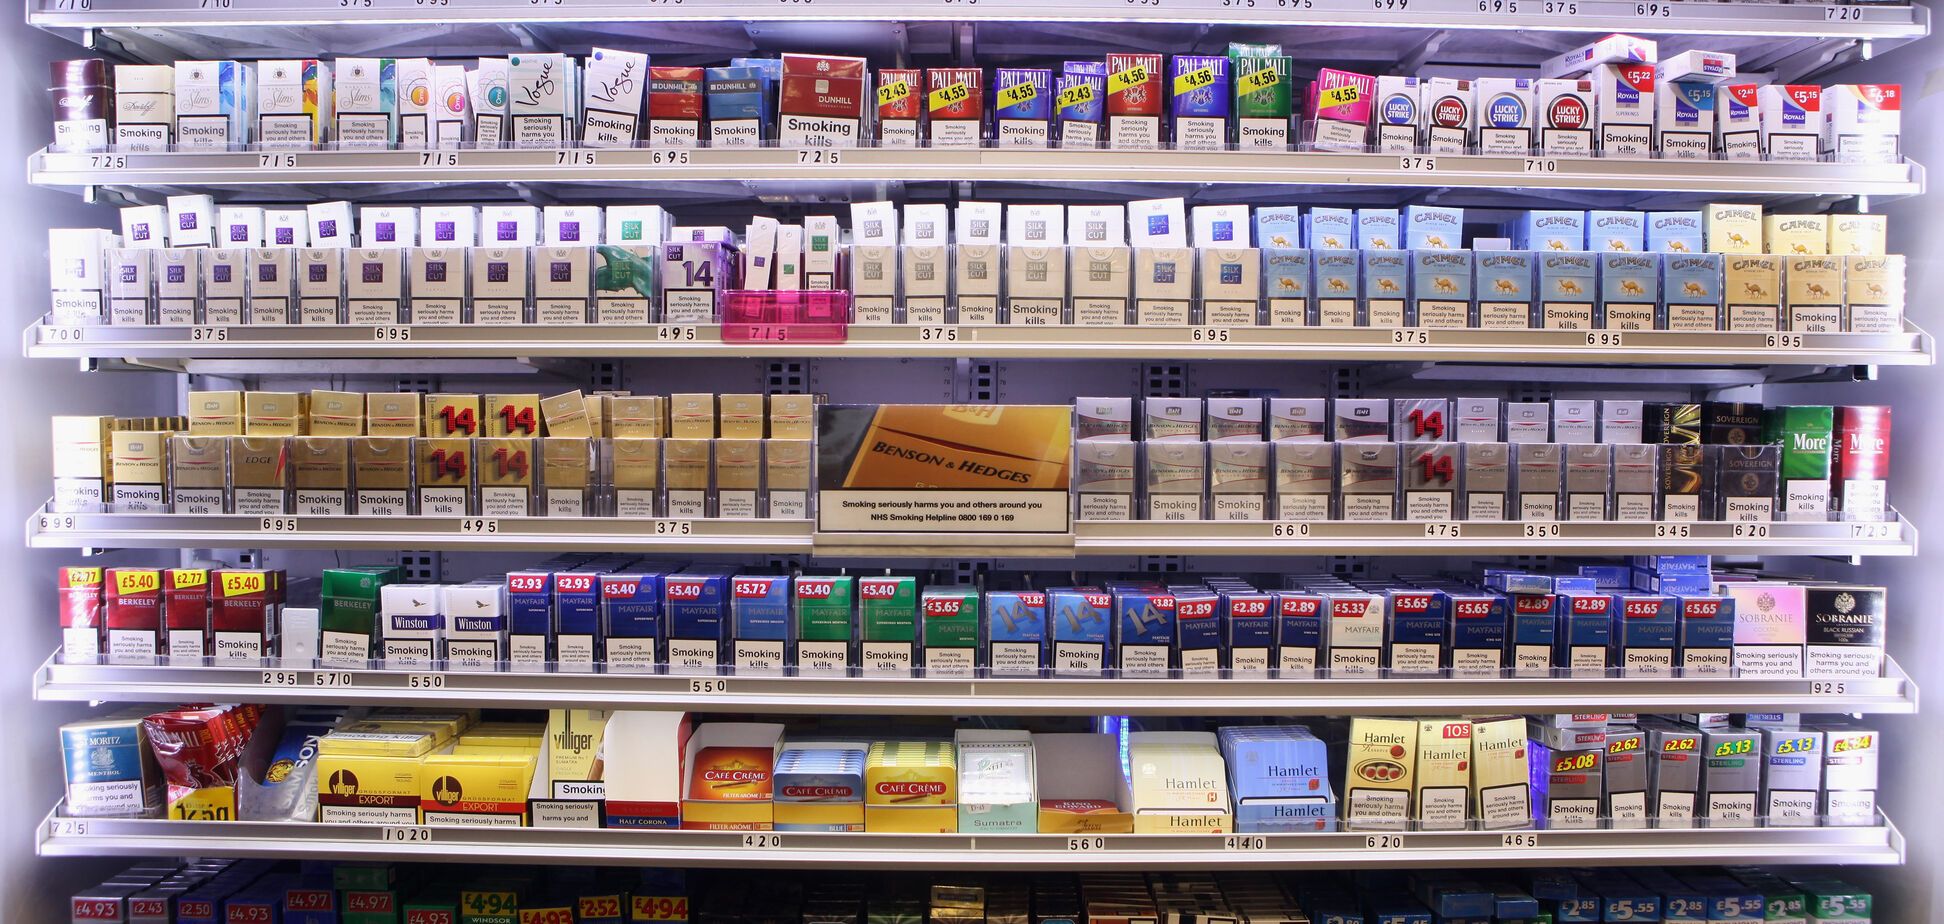 Рынок на $190 млн: кто контролирует сигаретный бизнес в 'Л/ДНР'